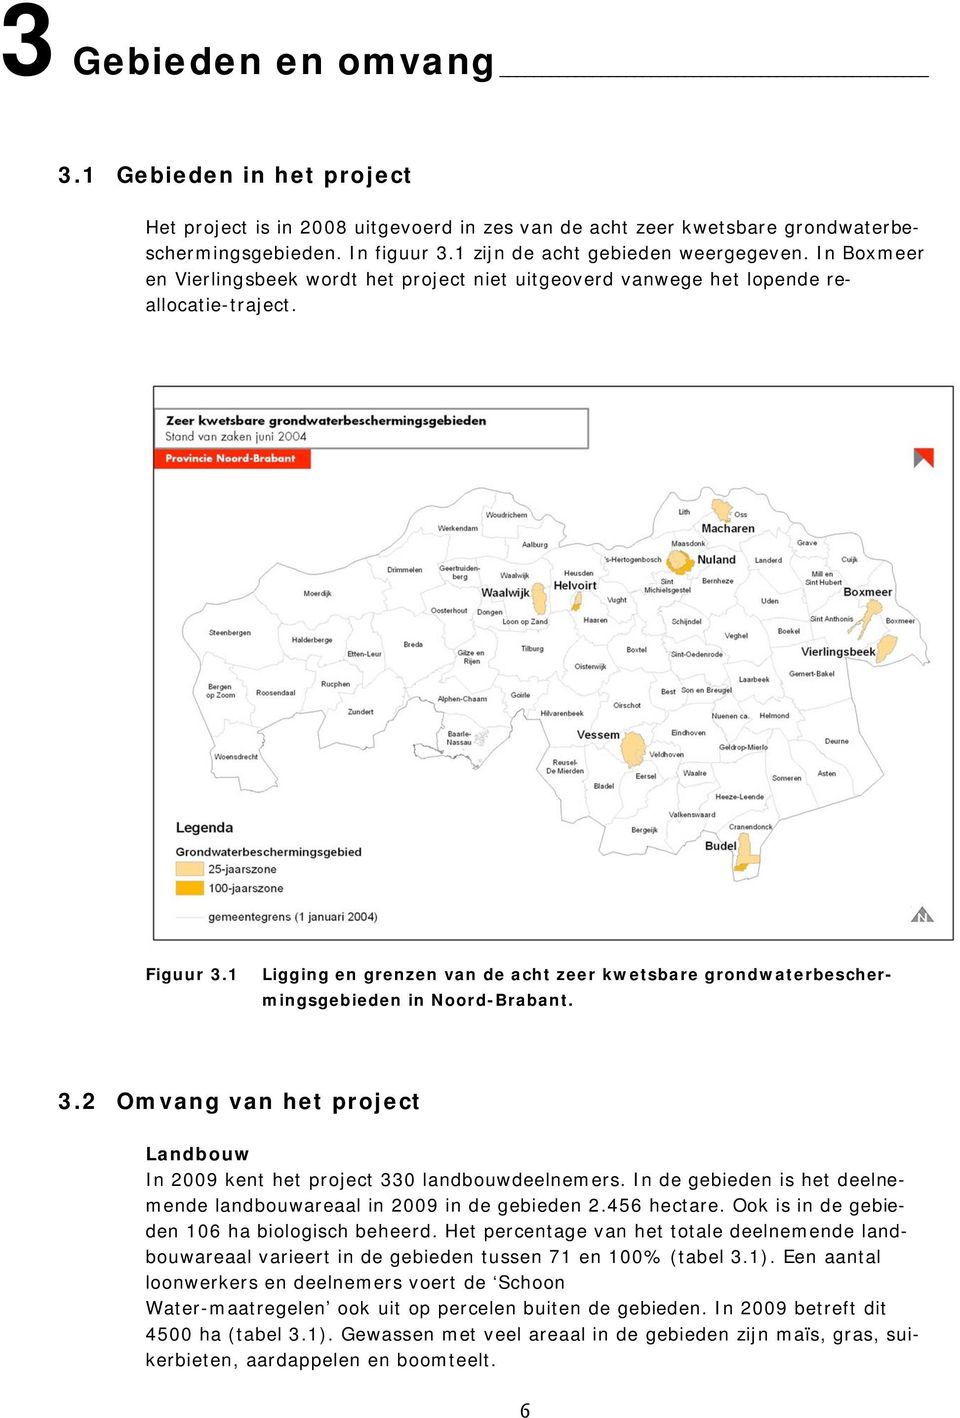 1 Ligging en grenzen van de acht zeer kwetsbare grondwaterbeschermingsgebieden in Noord-Brabant. 3.2 Omvang van het project Landbouw In 2009 kent het project 330 landbouwdeelnemers.